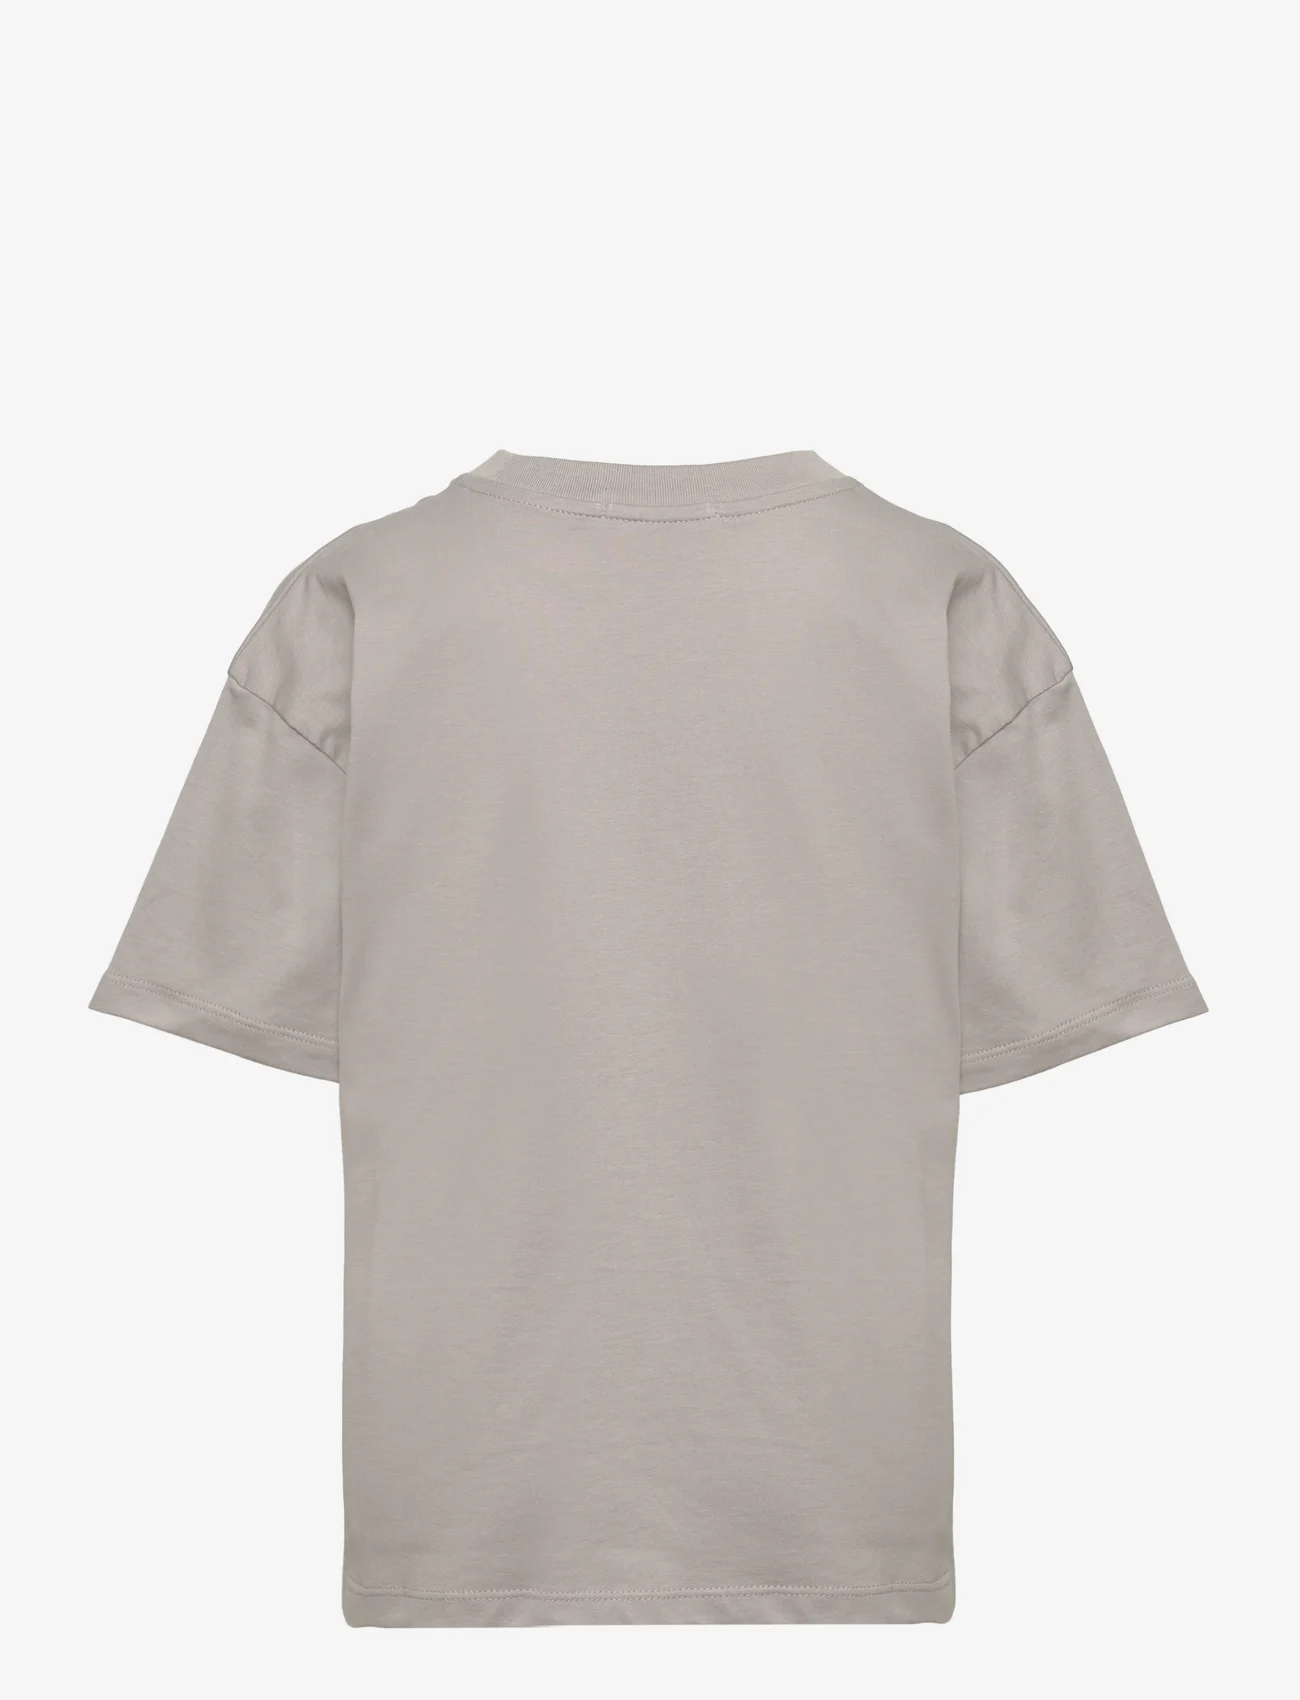 Calvin Klein - MARBLE MONOGRAM SS T-SHIRT - short-sleeved t-shirts - porpoise - 1